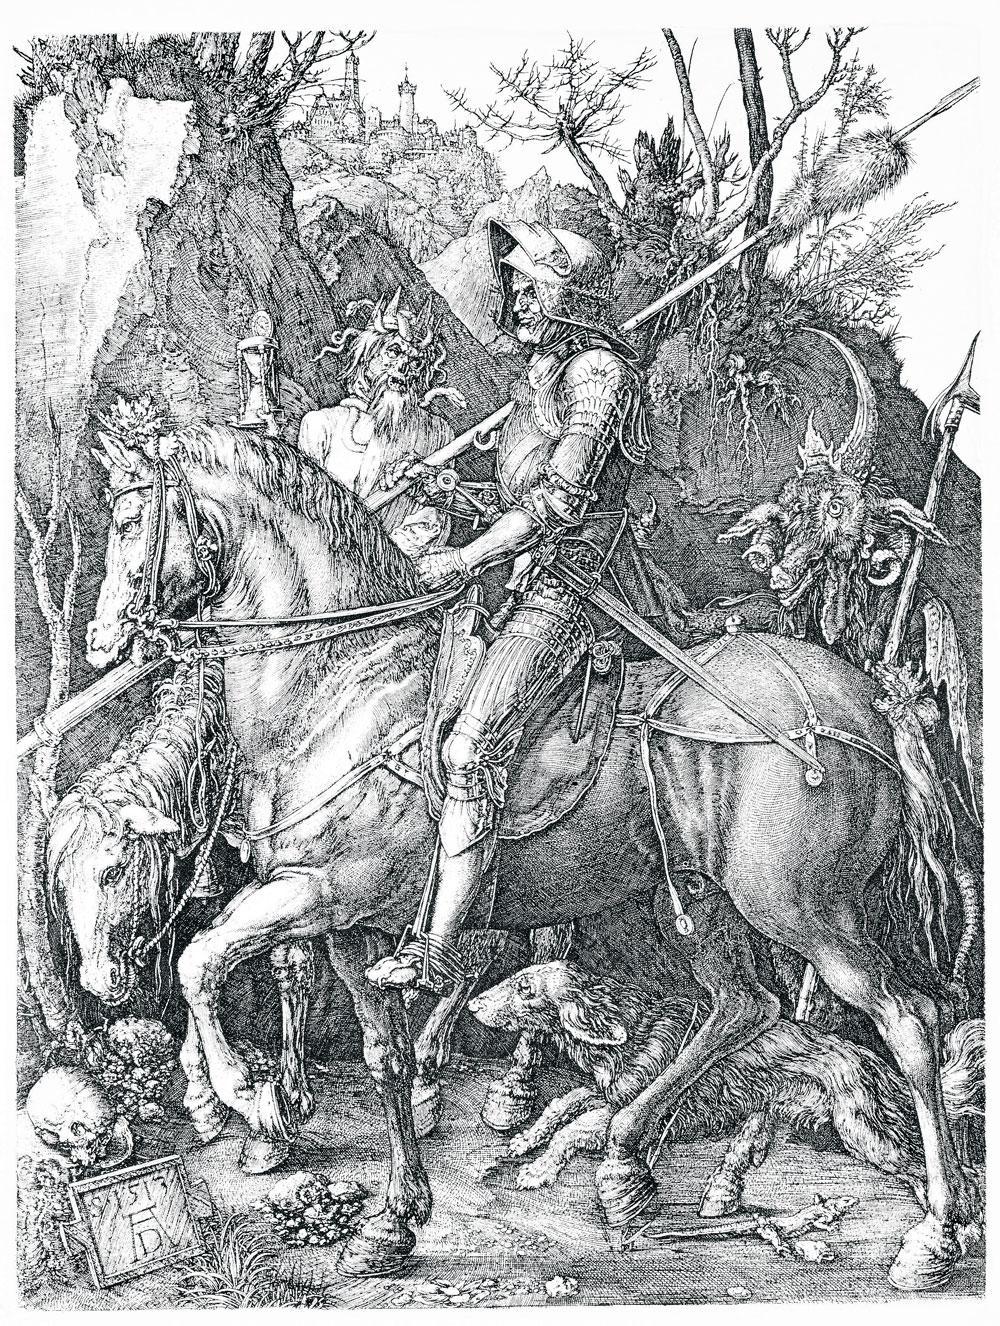 Le Chevalier, la Mort et le Diable, Albrecht Dürer, 1513.